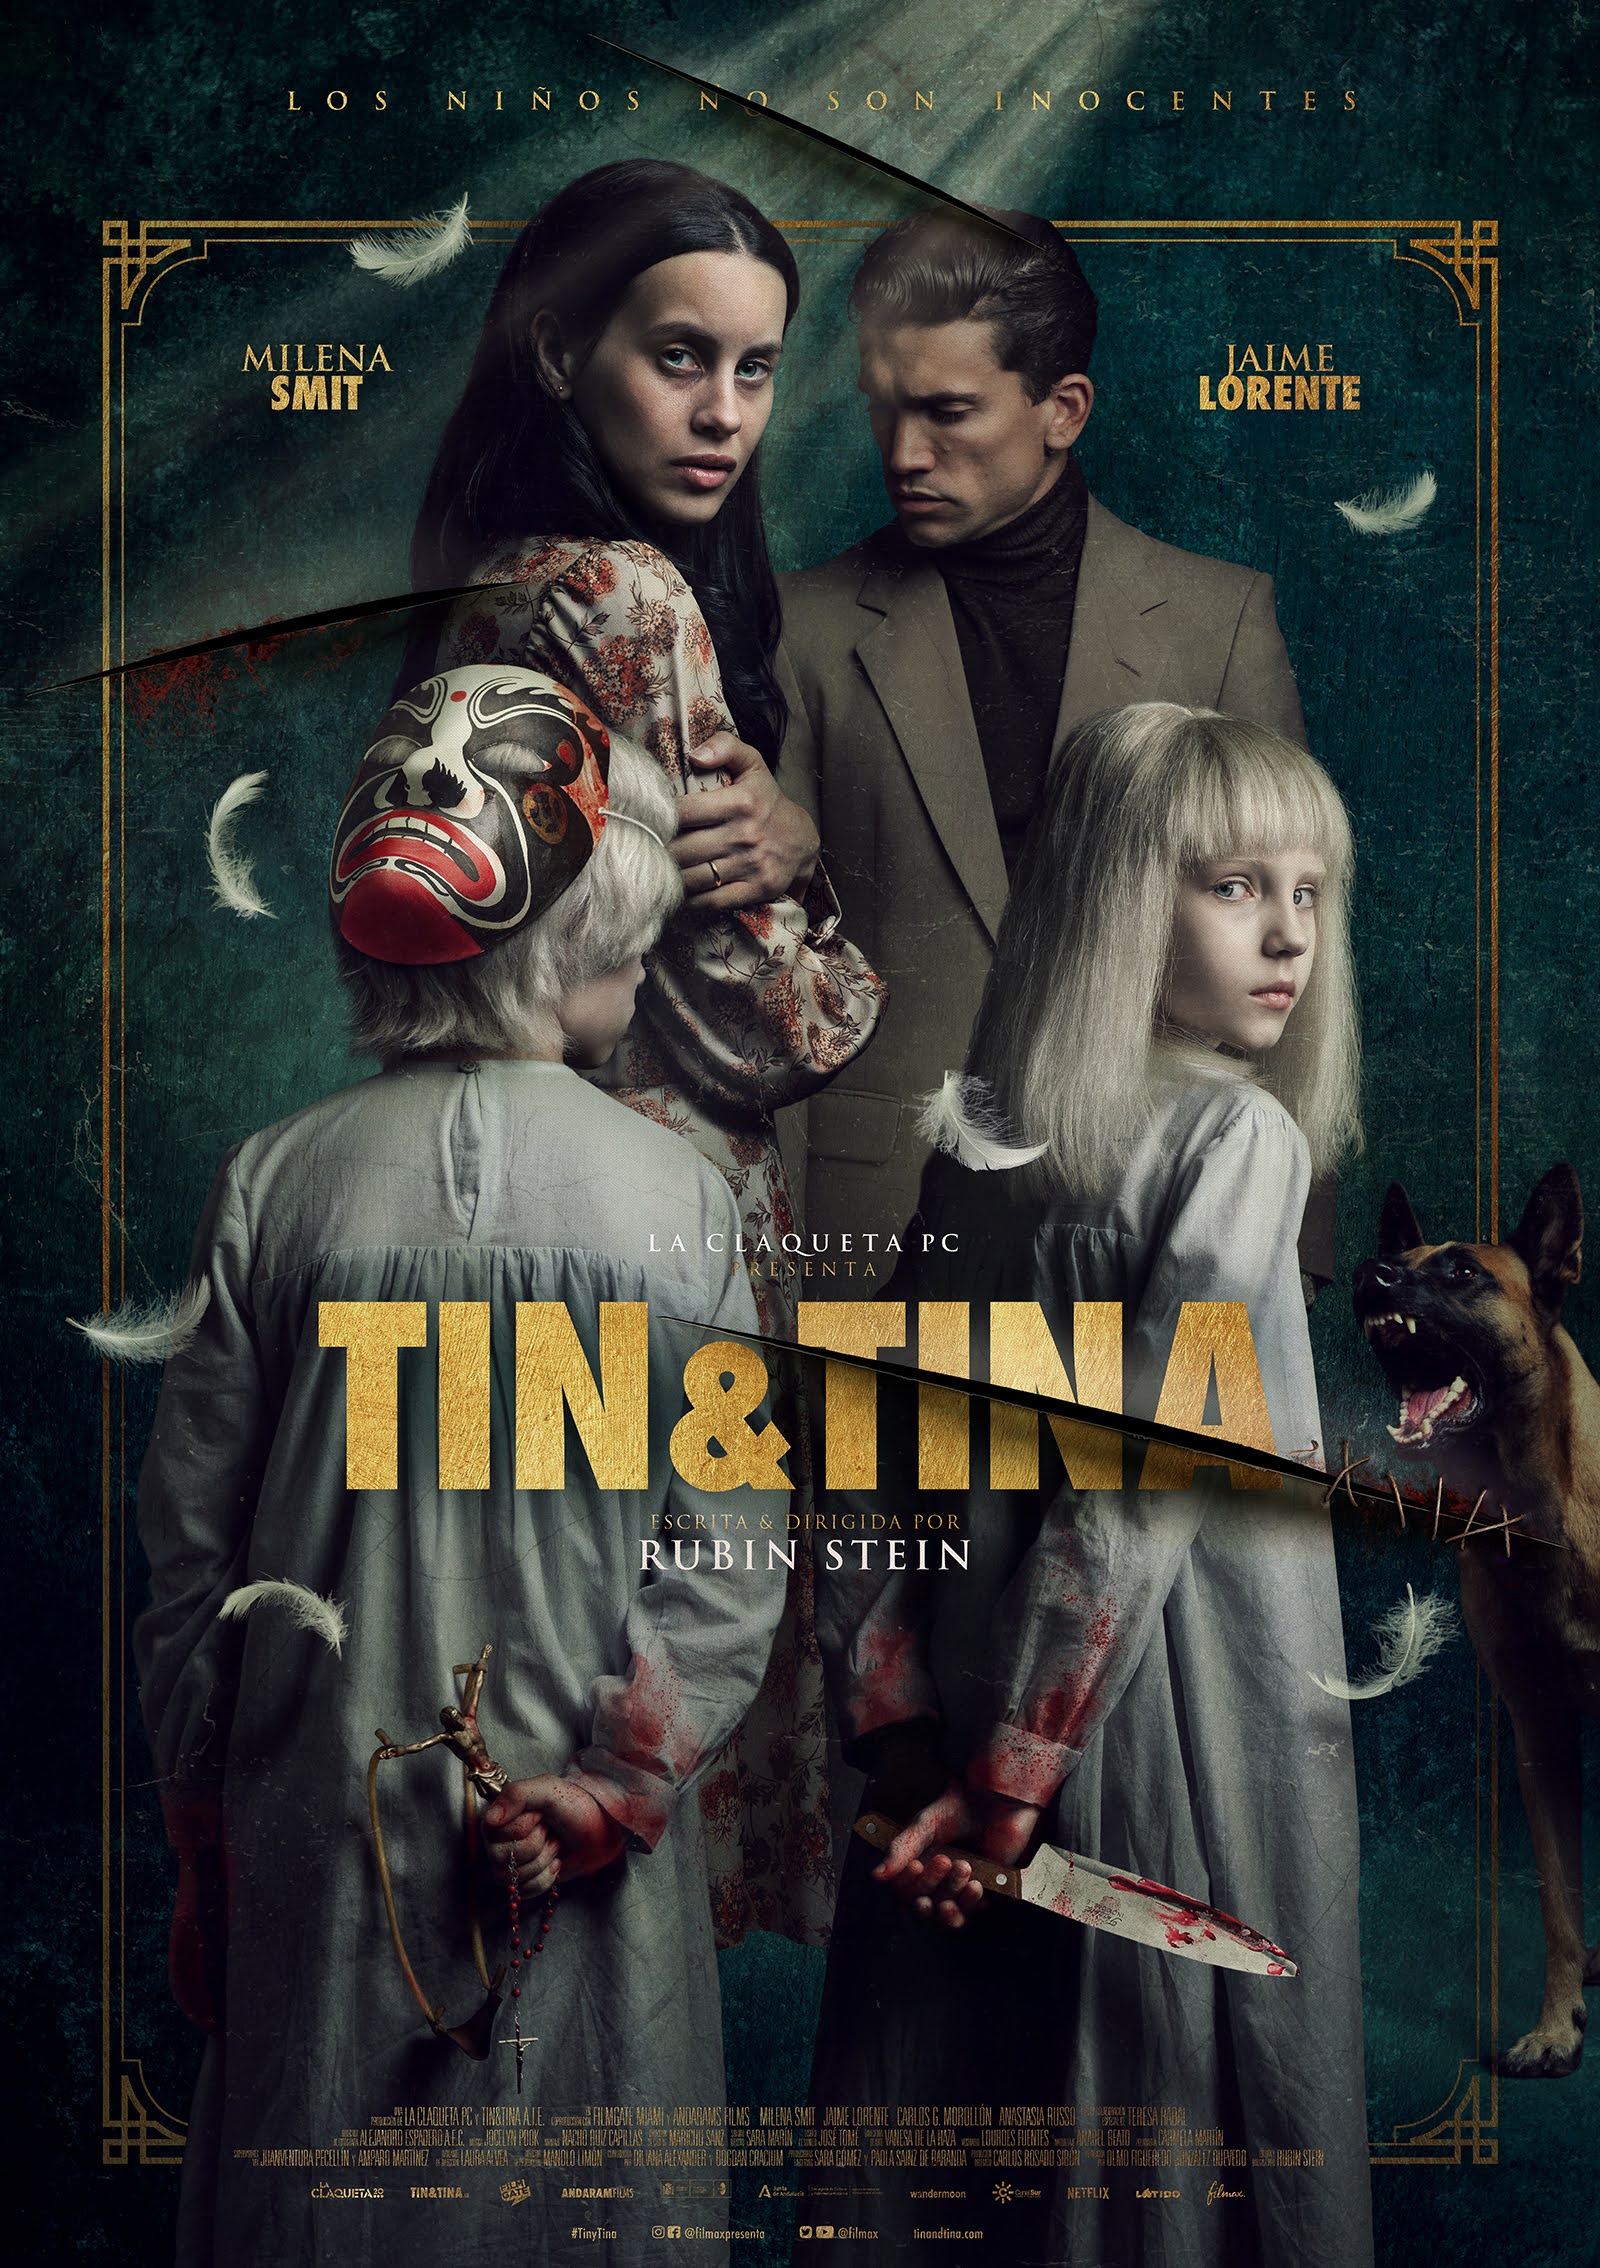 ดูหนังออนไลน์ฟรี ดูหนังฟรี Tin & Tina 2023 ดูหนังใหม่ได้ที่นี่